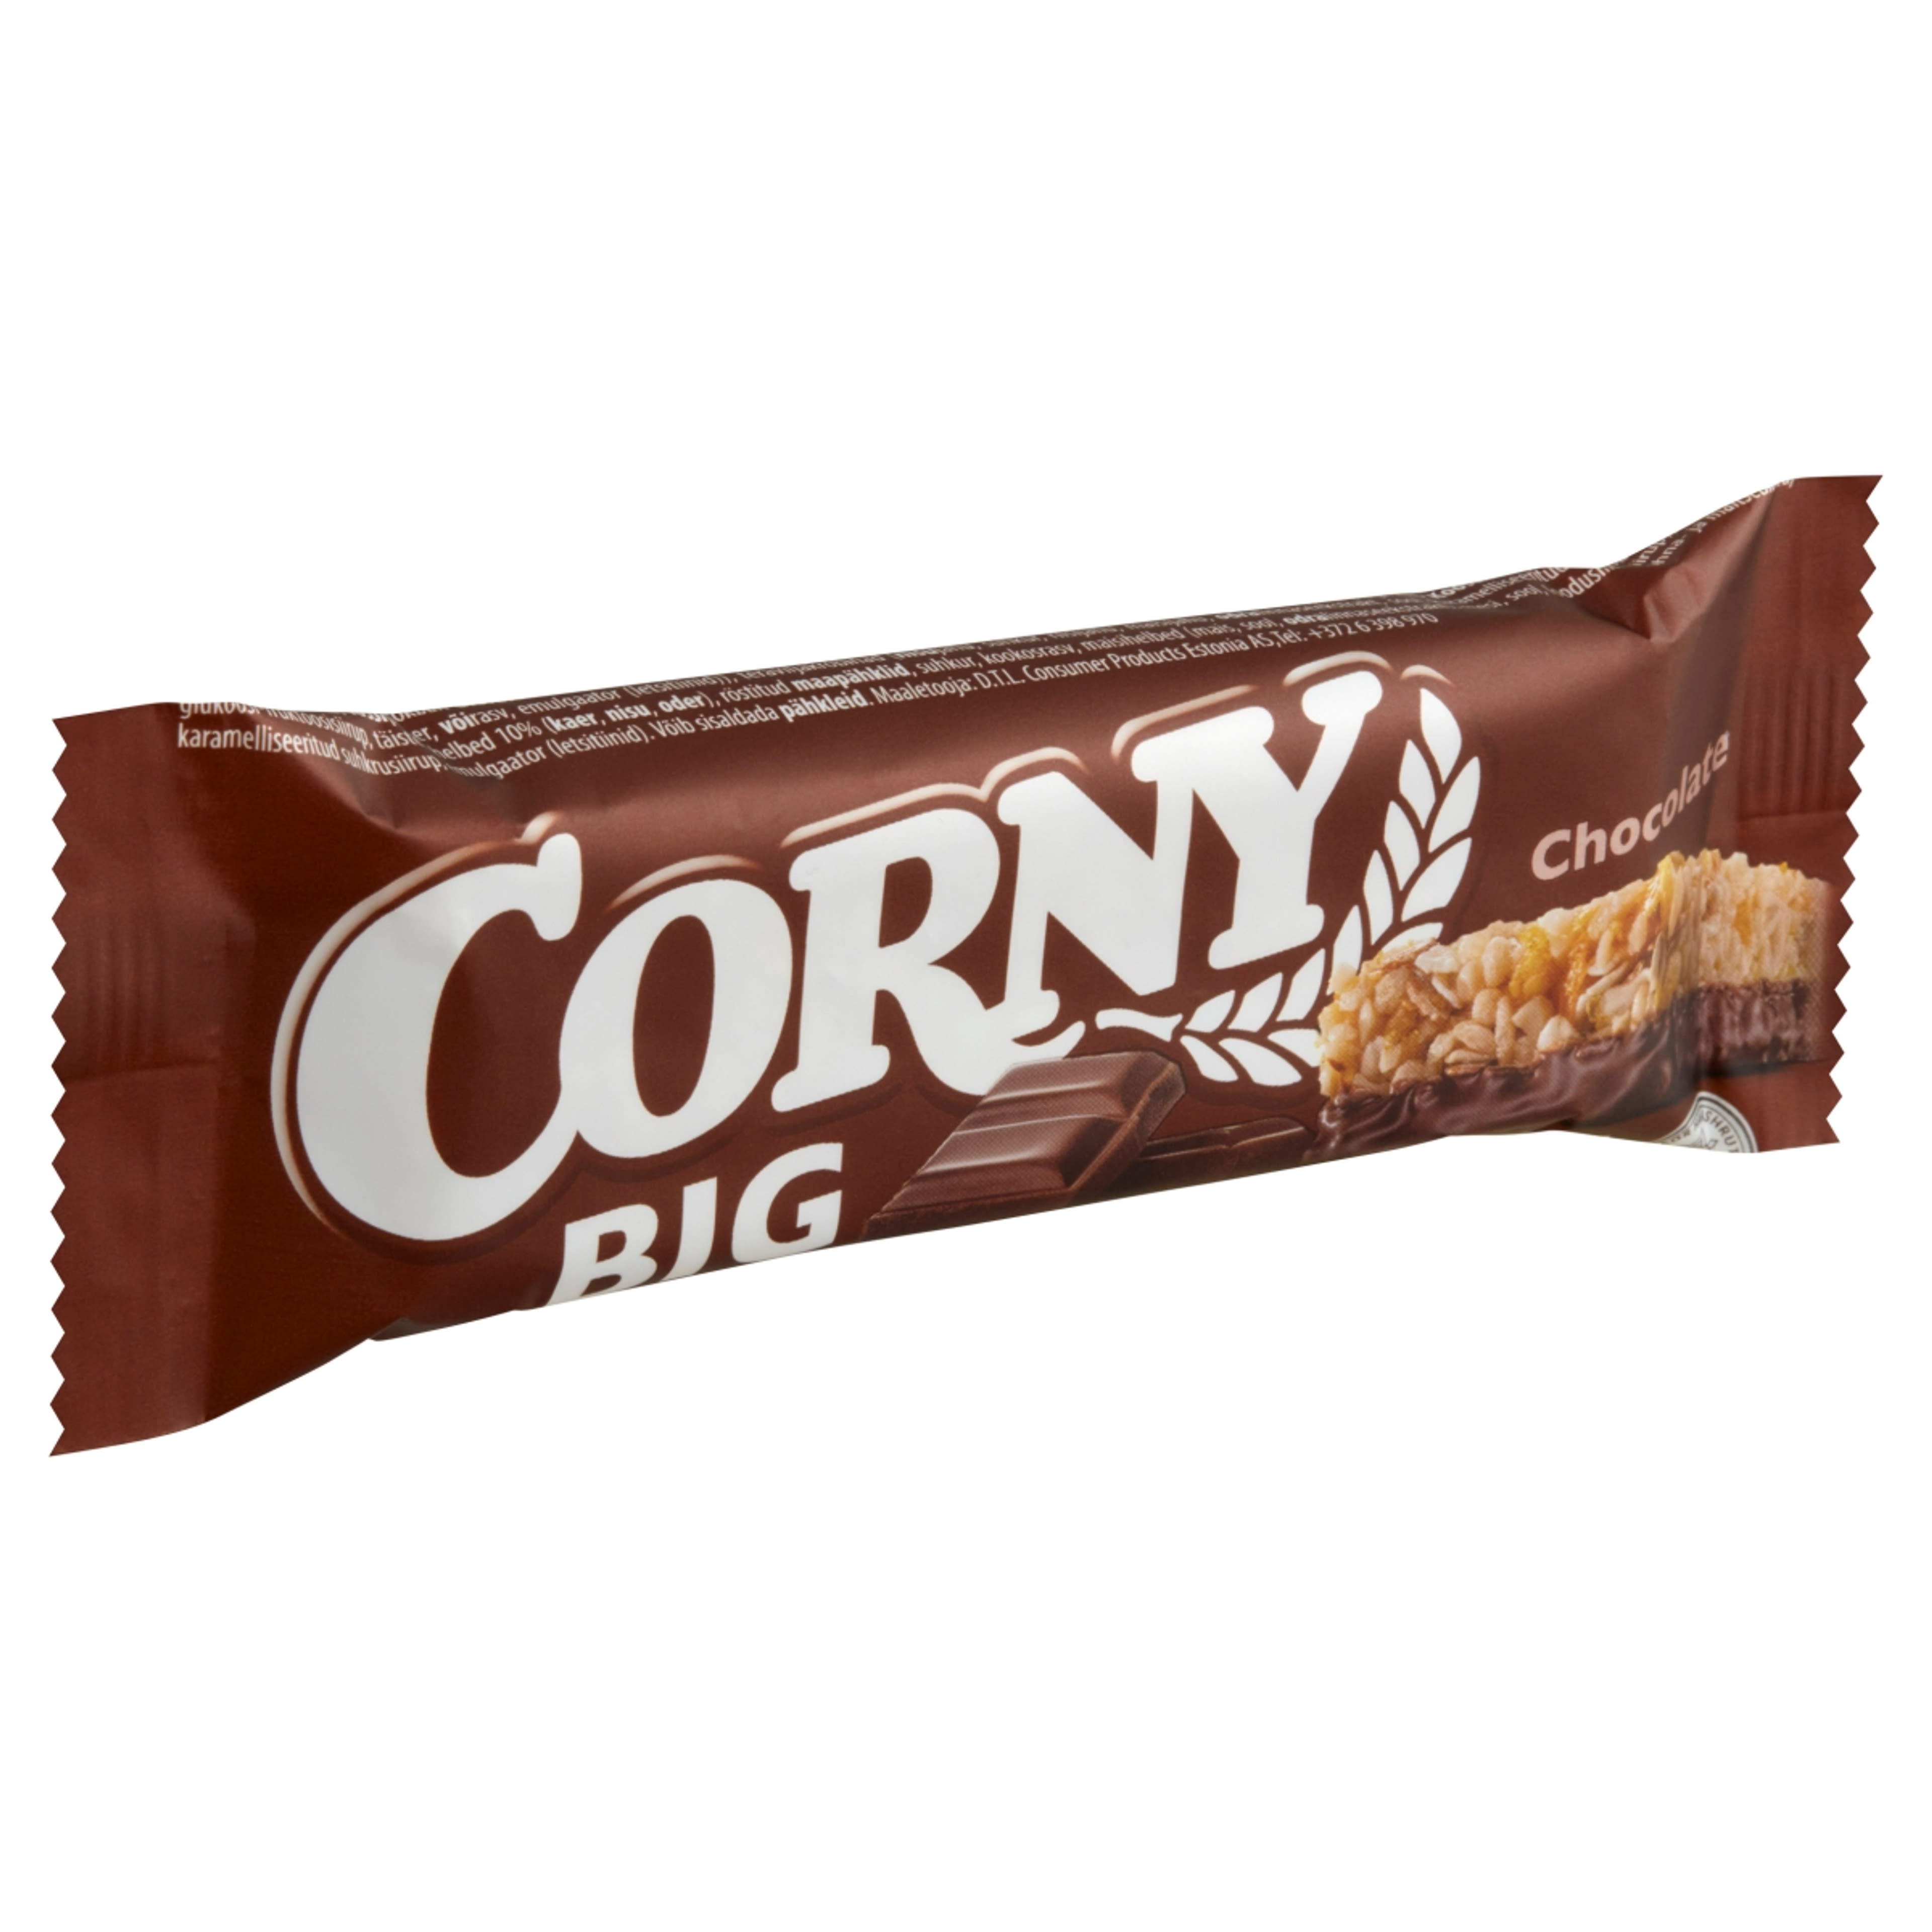 Corny big csokis müzli szelet - 50 g